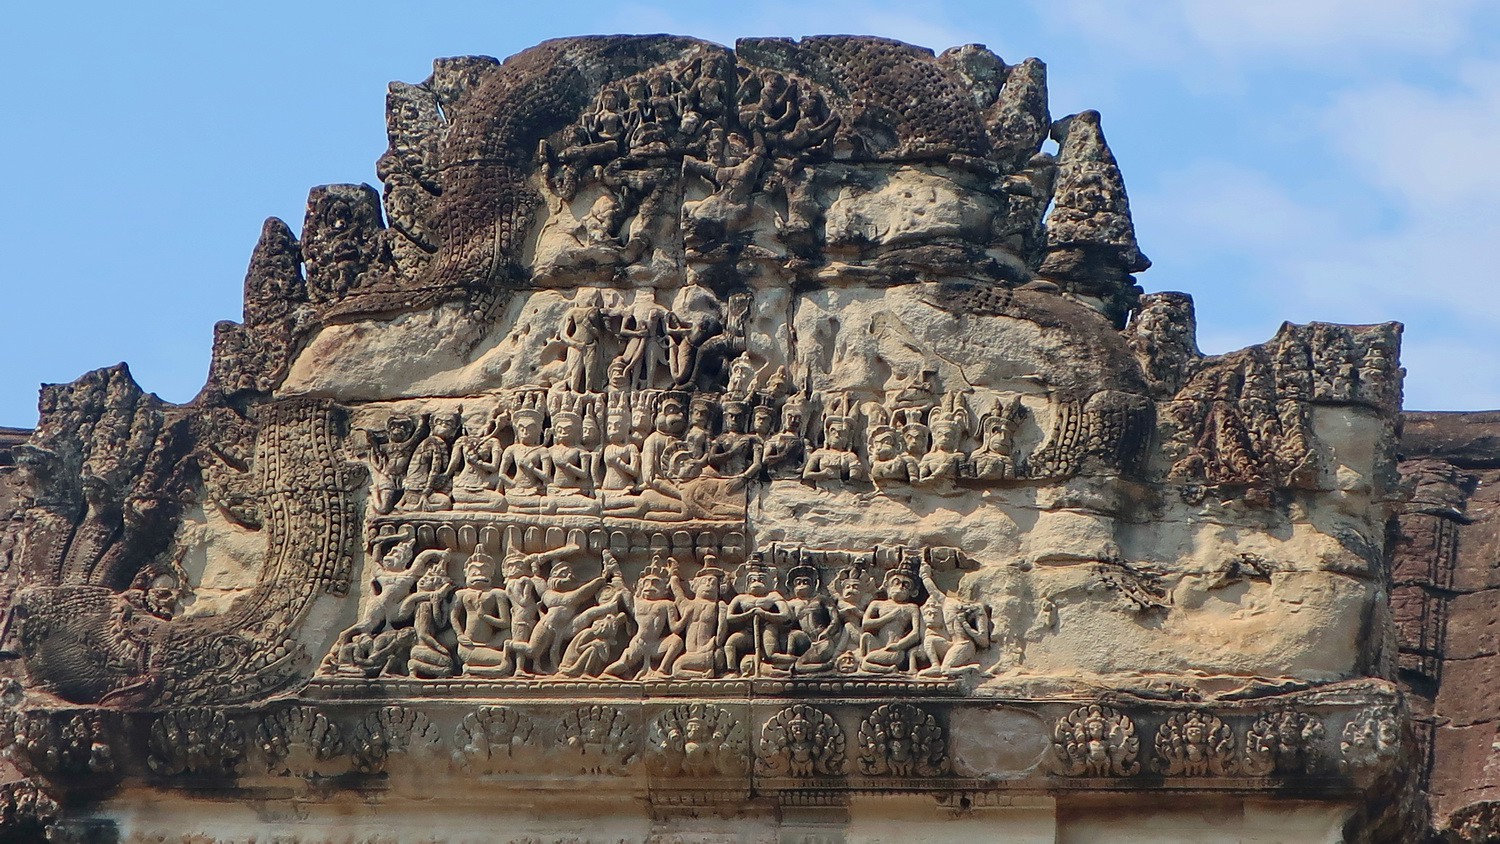 Relief sculpture in Angkor Wat